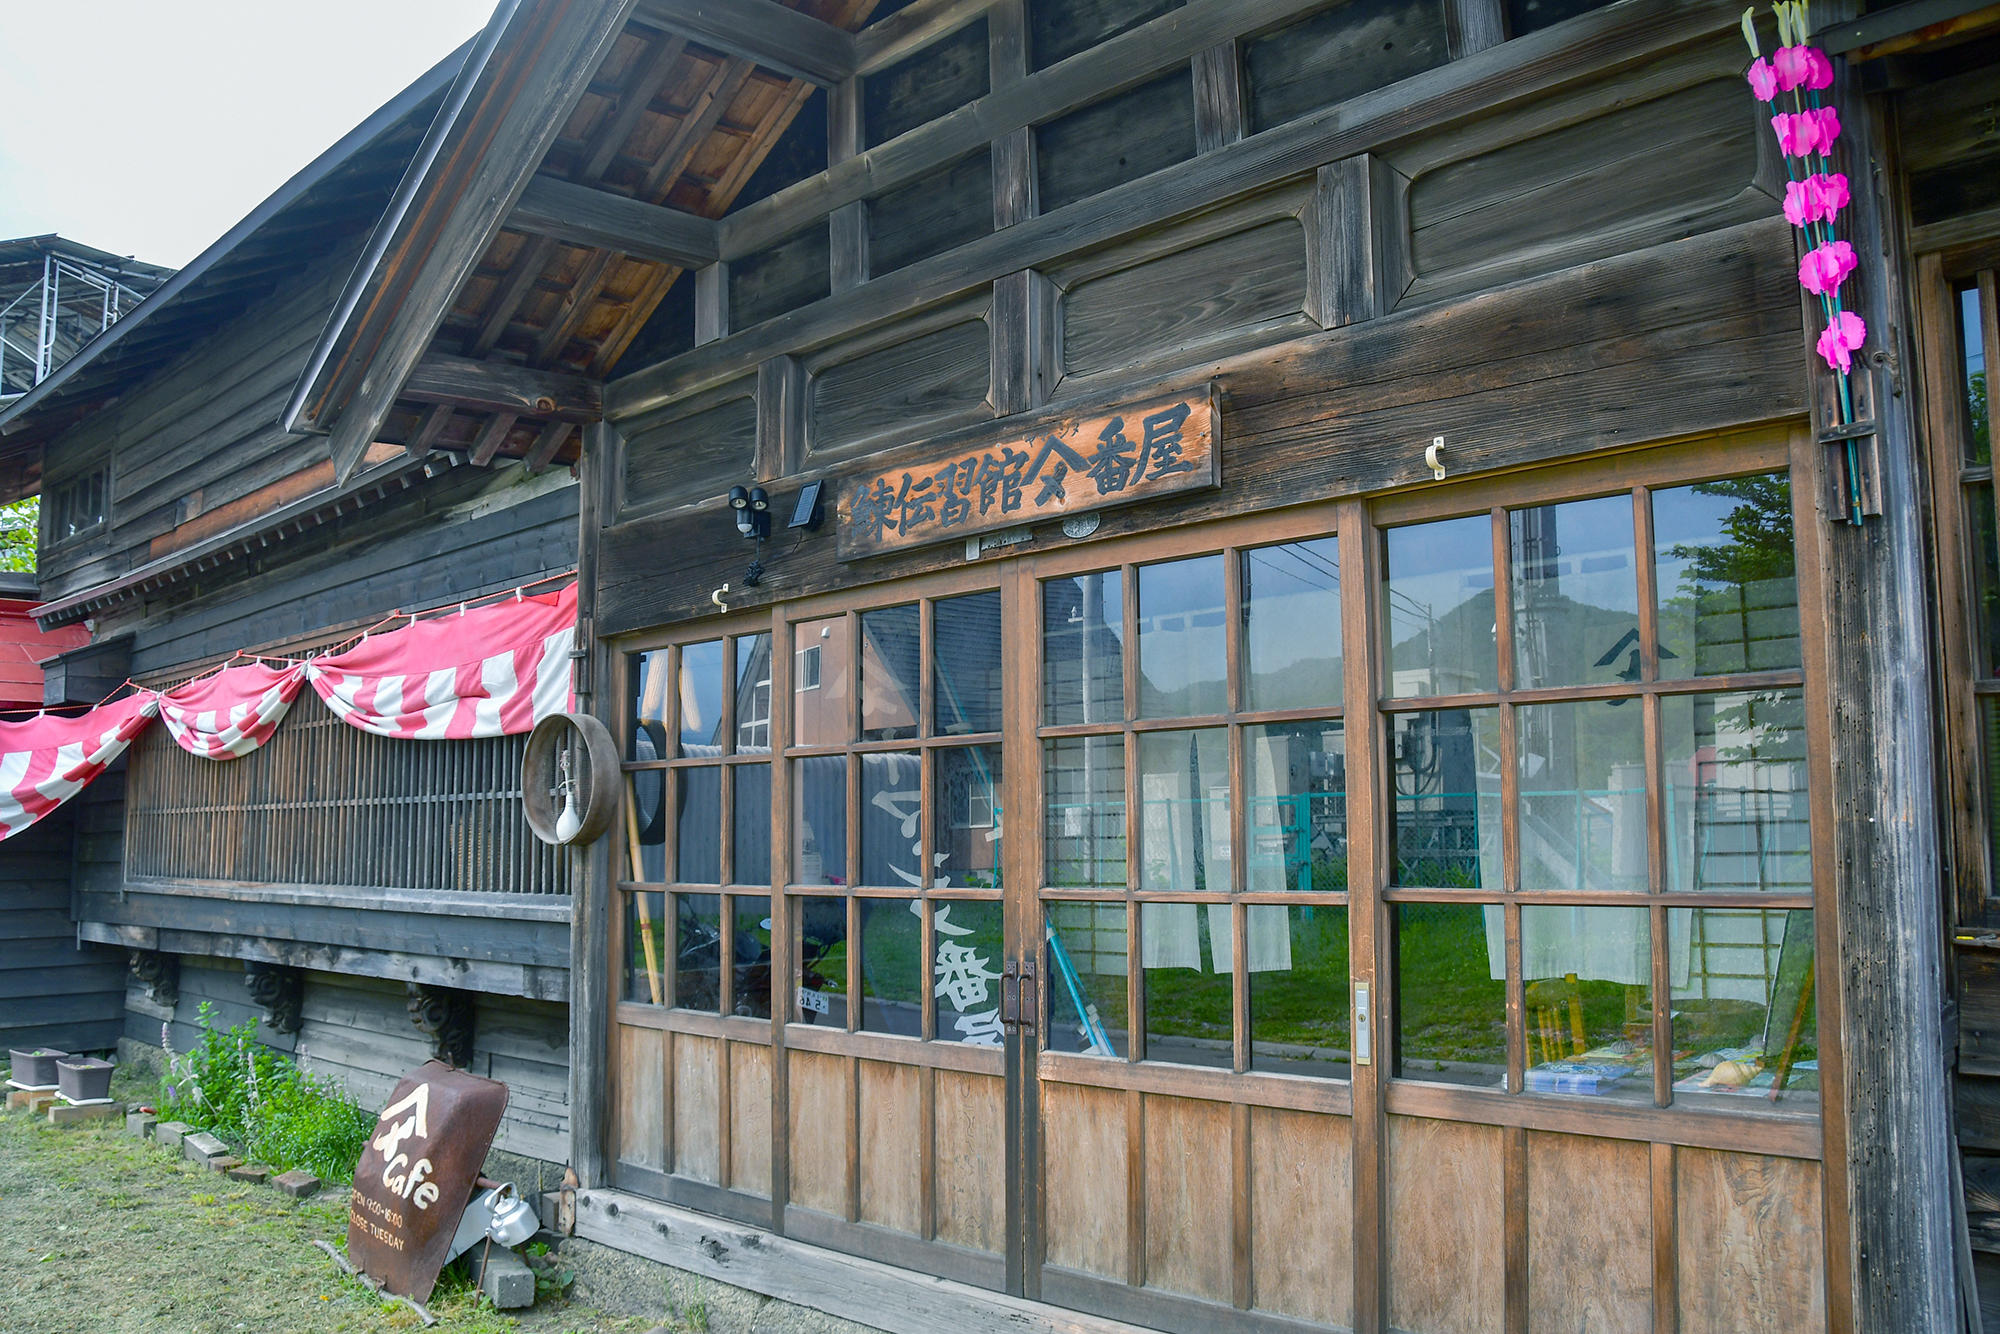 ヤマシメ番屋さんは、明治末期に建設された鰊番屋を保存・活用した、無料で見学できる鰊文化伝承施設だそう。